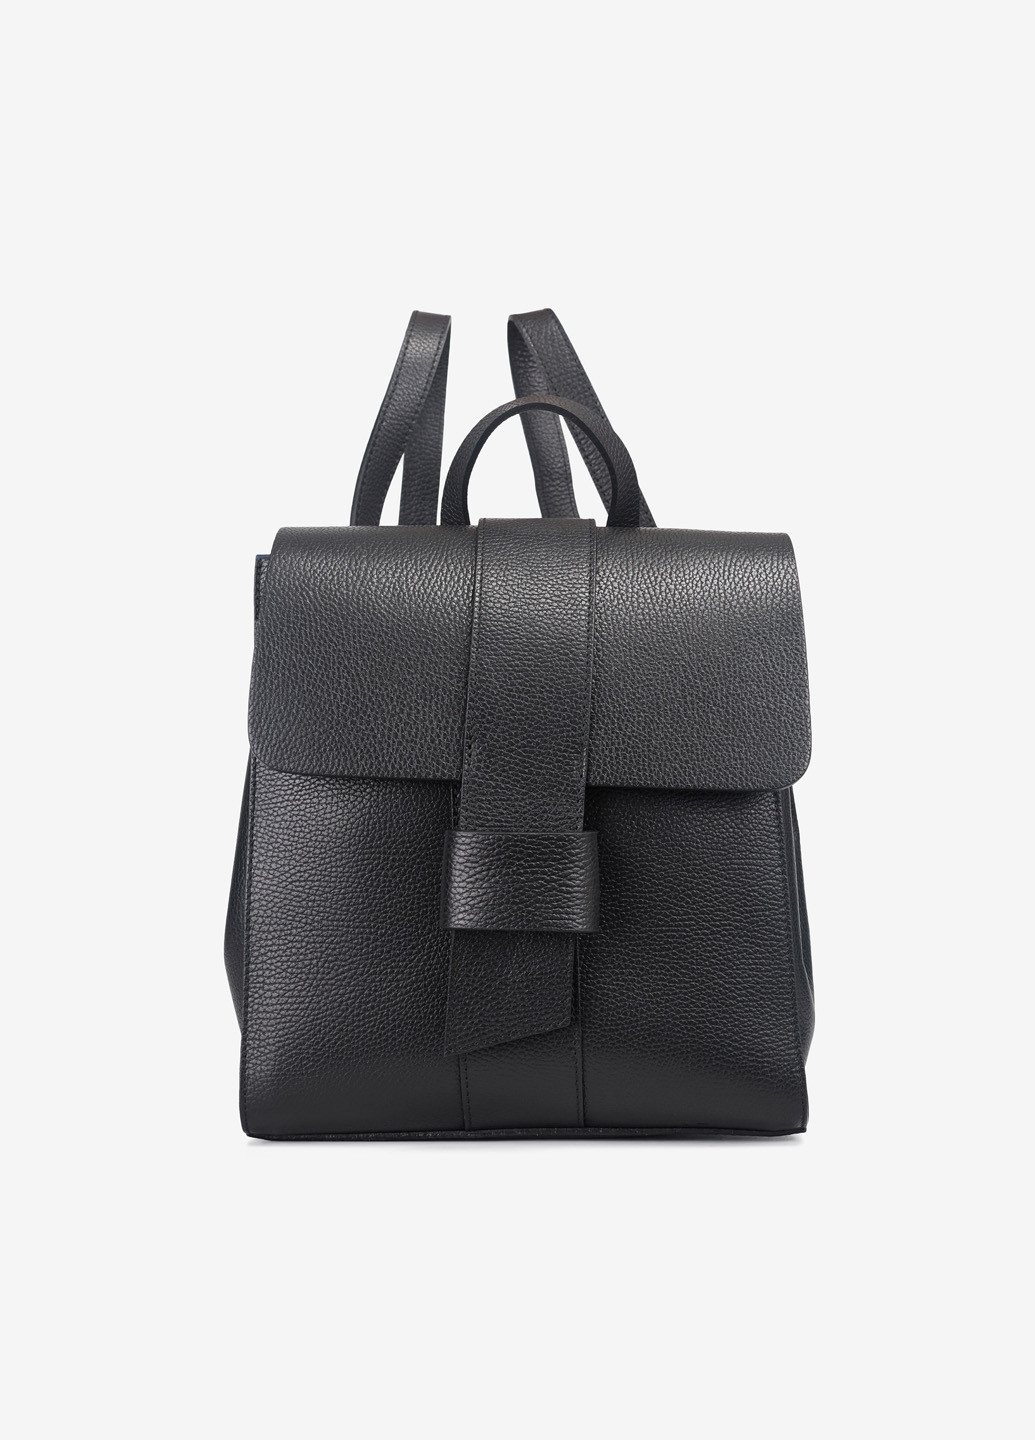 Сумка-рюкзак жіноча шкіряна середня Backpack Regina Notte (268036688)